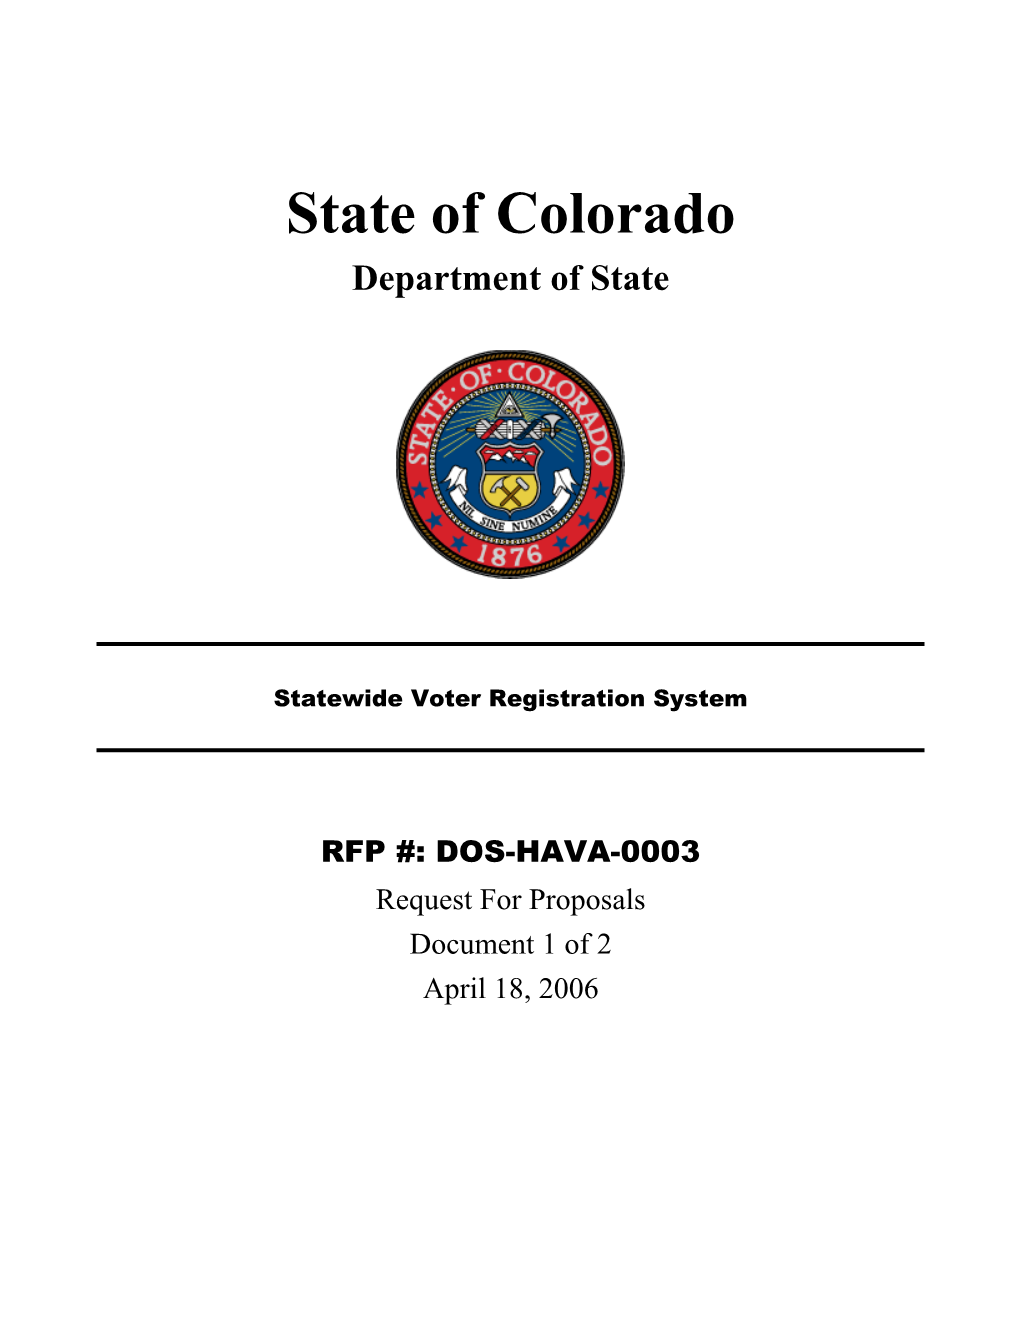 Colorado Benefits Management System (Cbms)